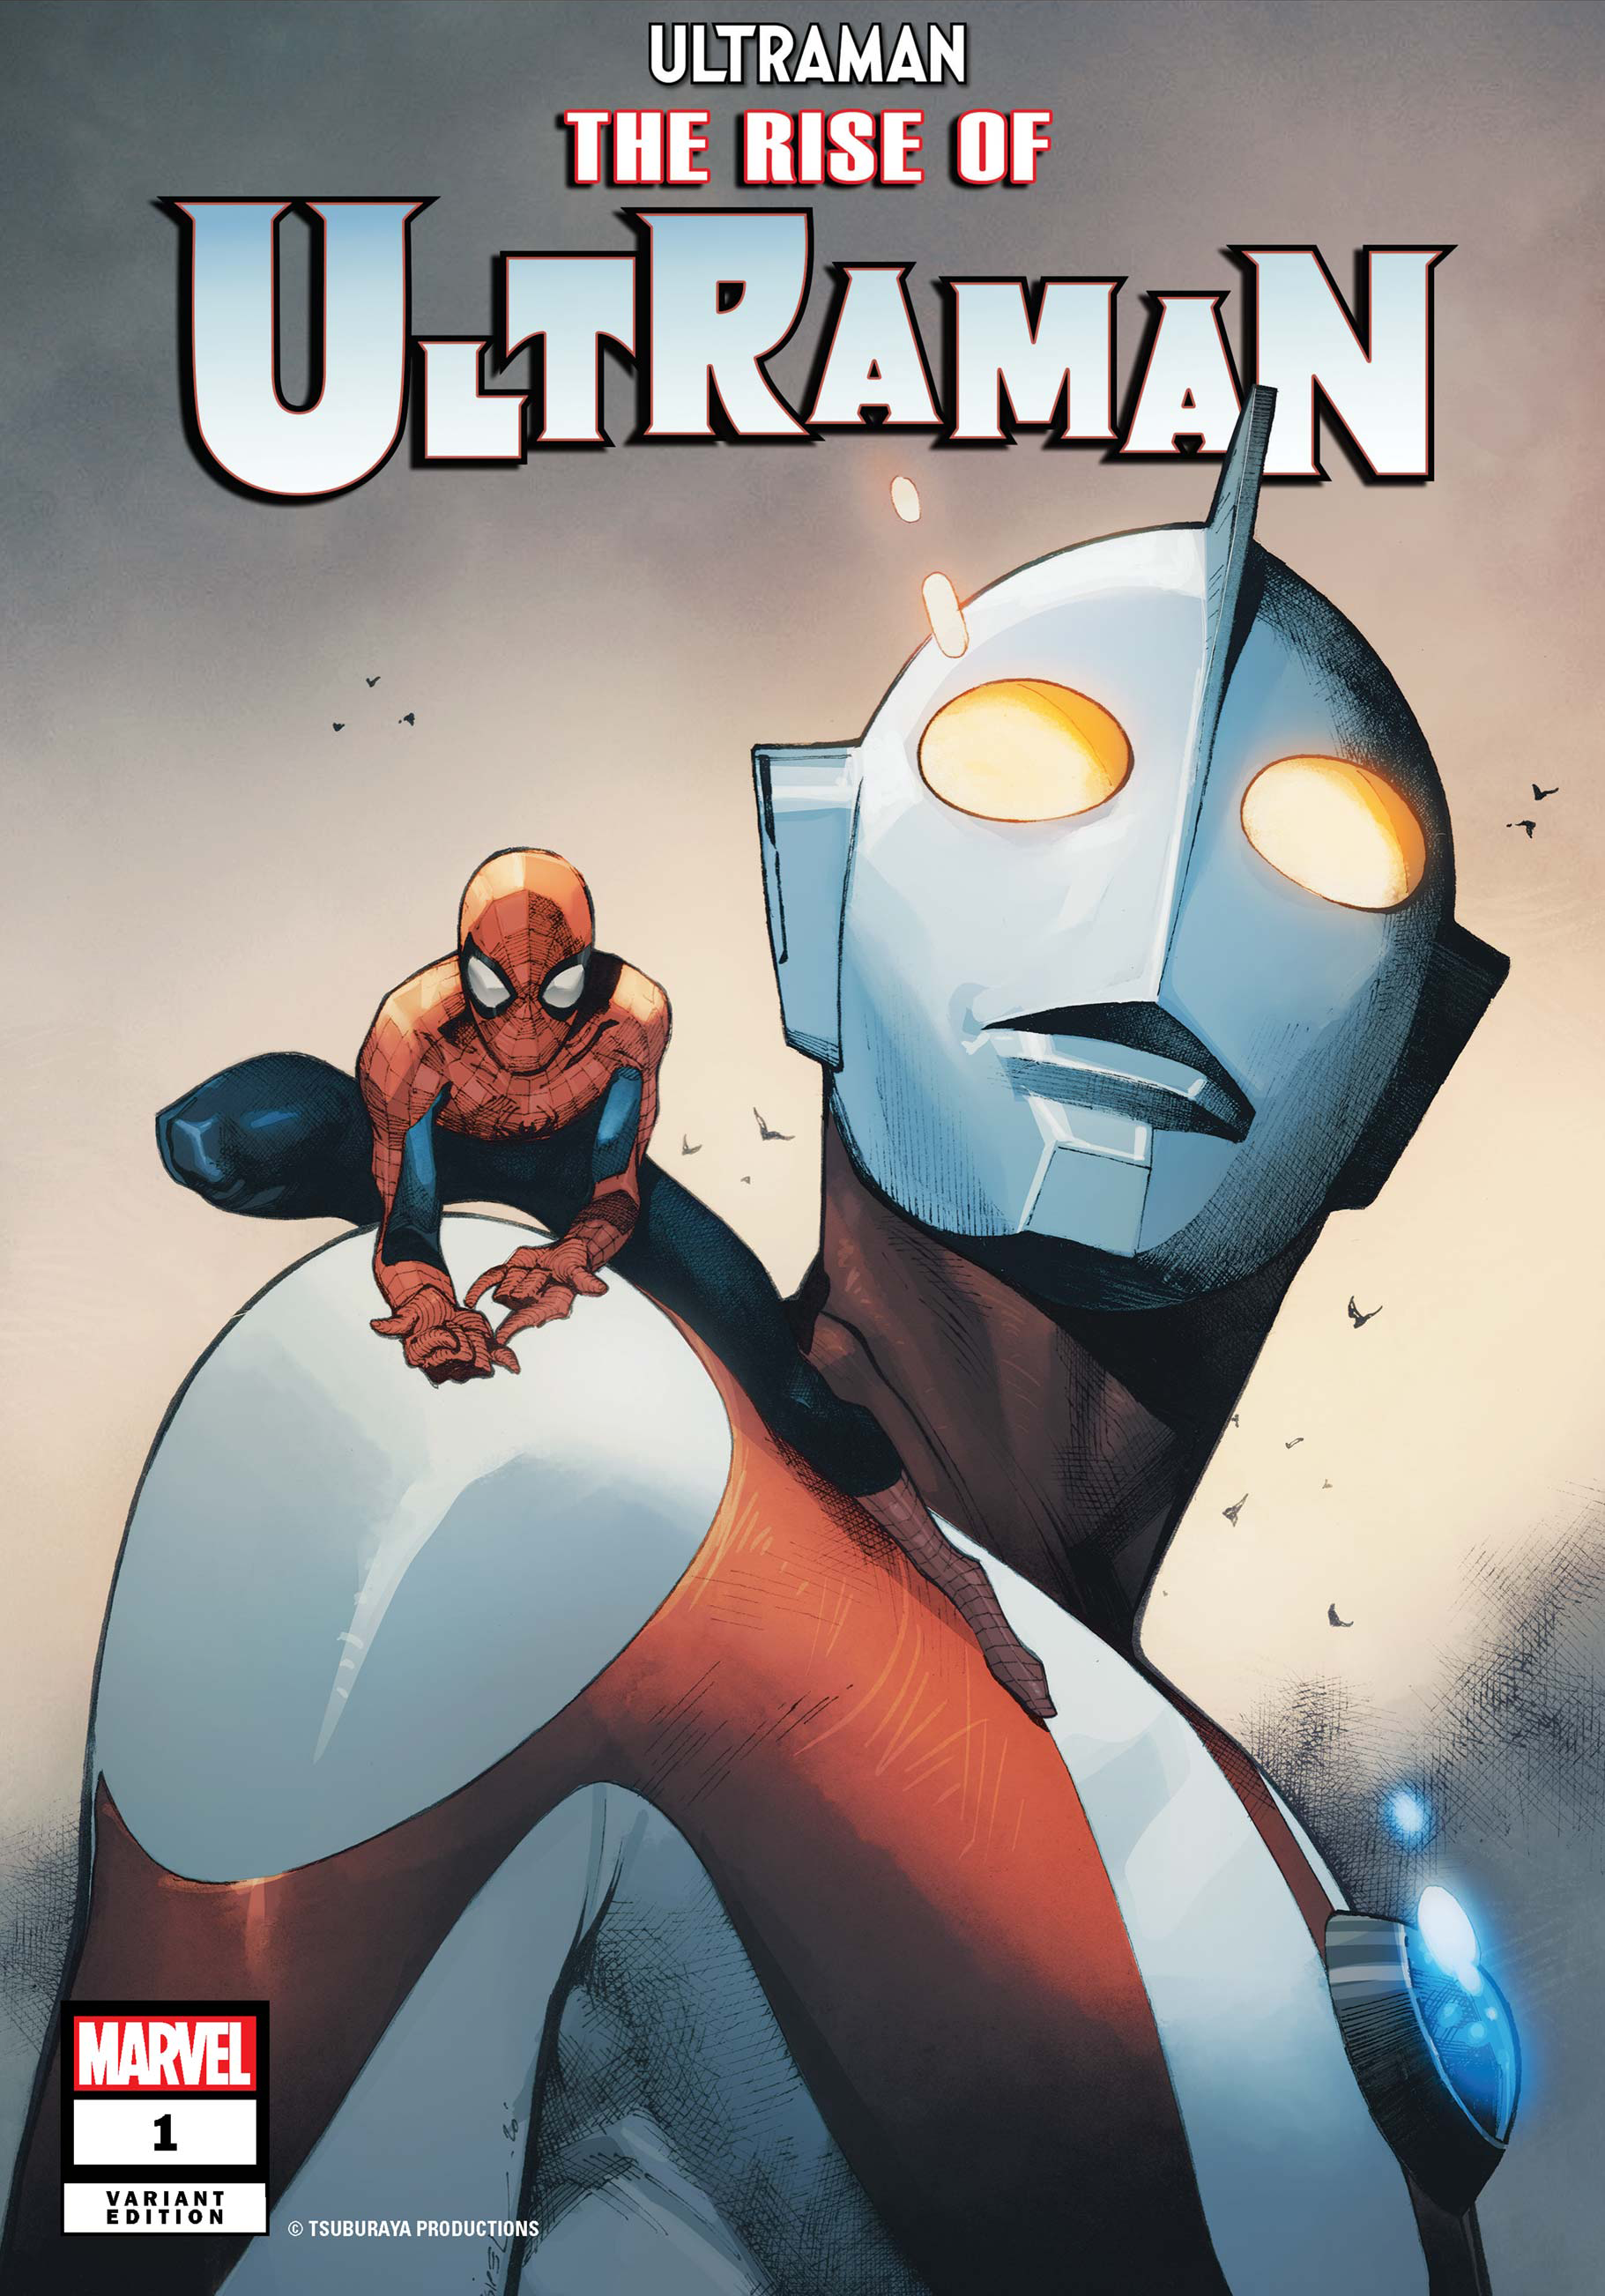 Trong màn hình của thế giới siêu năng lực, Ultraman là một nhân vật chính thật sự đặc biệt. Và giờ đây, Ultraman đã xuất hiện trong thế giới Marvel đầy hấp dẫn. Hãy cùng xem để khám phá thêm về câu chuyện thú vị này.